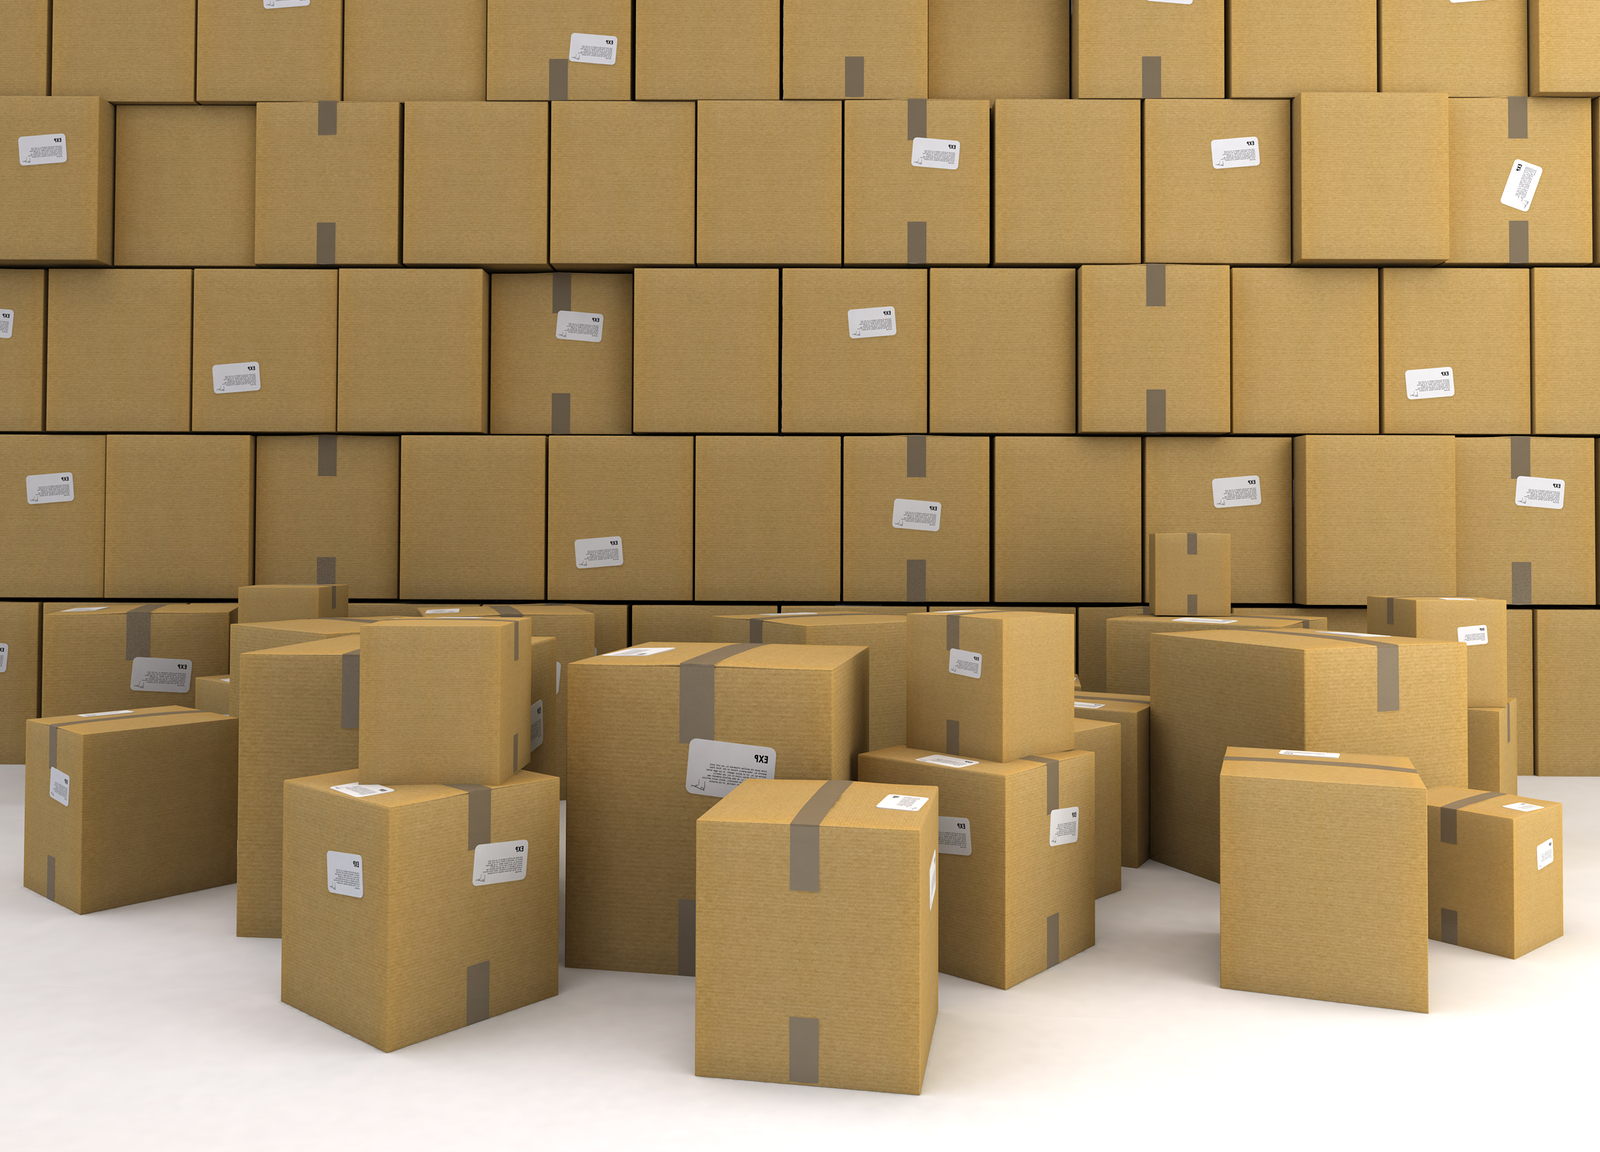 ups shipping boxes